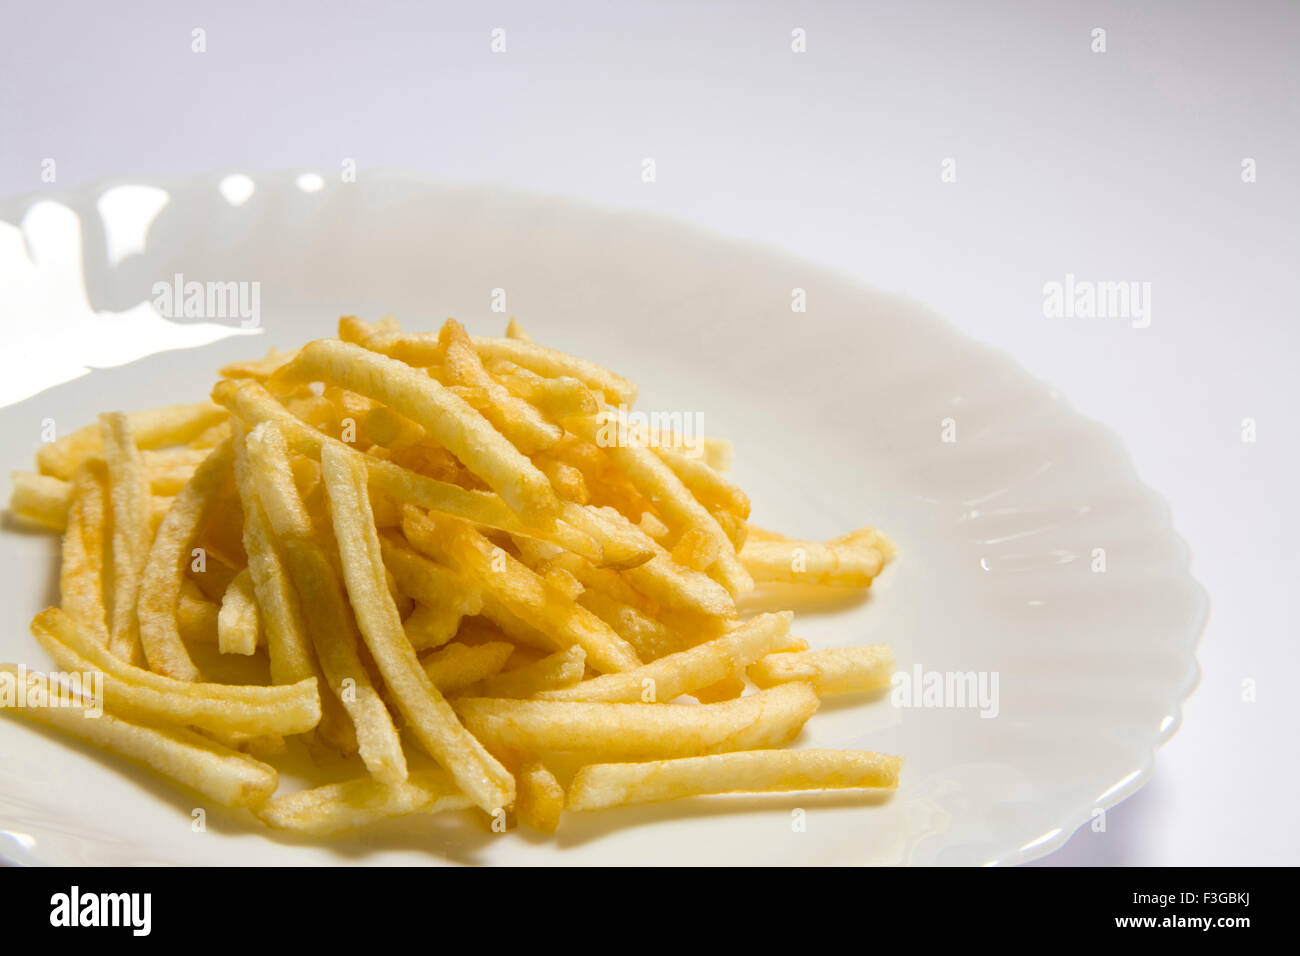 Junk food snack salato di patate fritte bastoni servita nella piastra Foto Stock